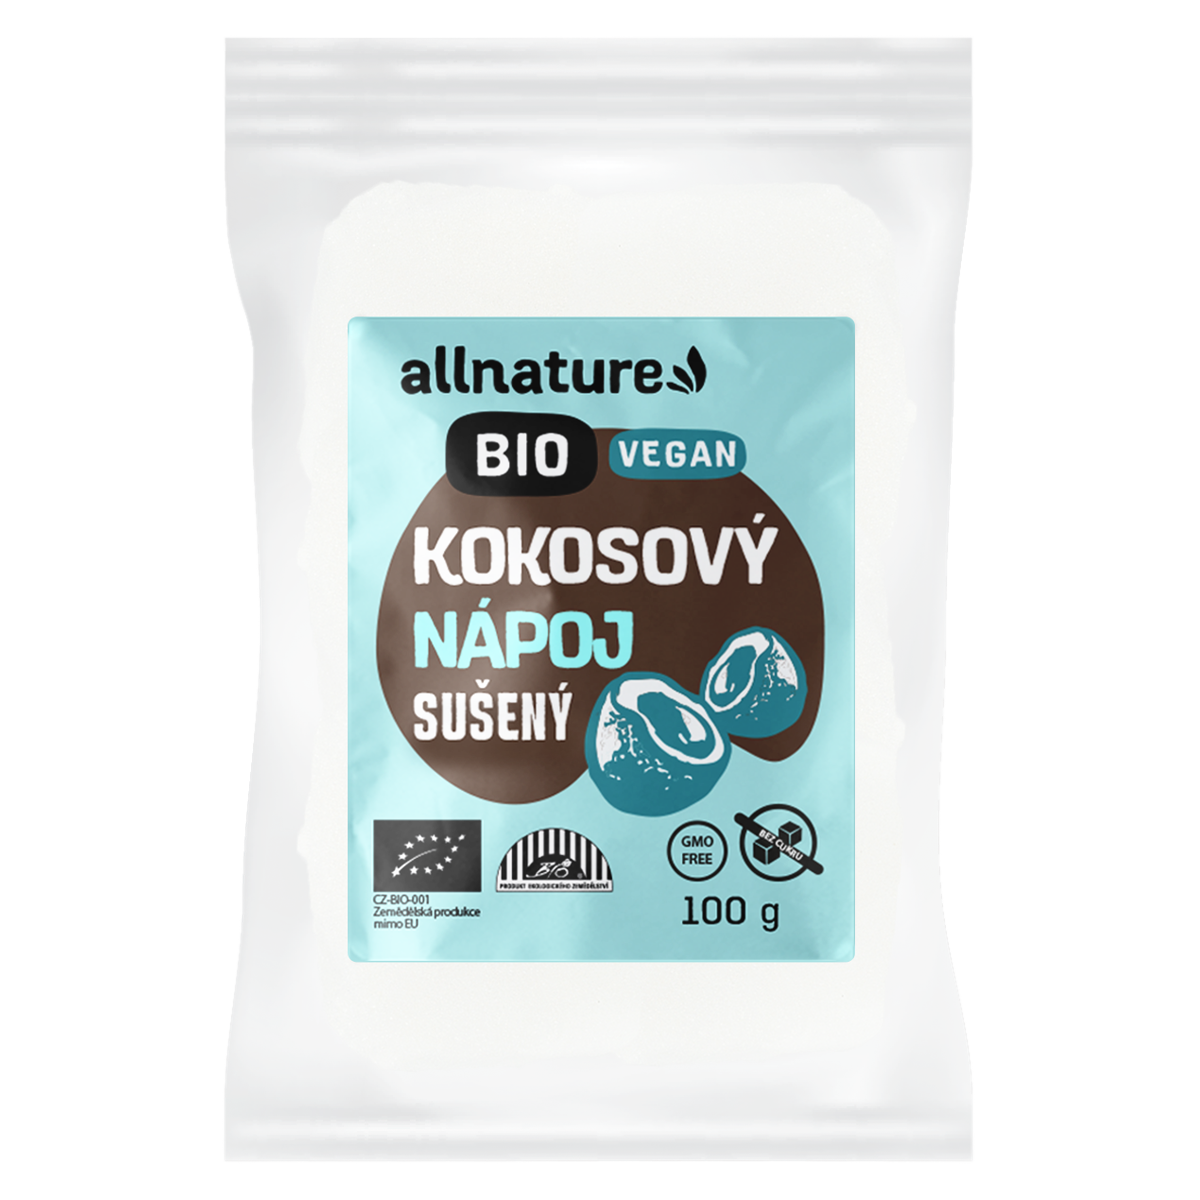 Allnature Kokosový nápoj sušený BIO 100 g - bez přidaného cukru a pro vegany Allnature